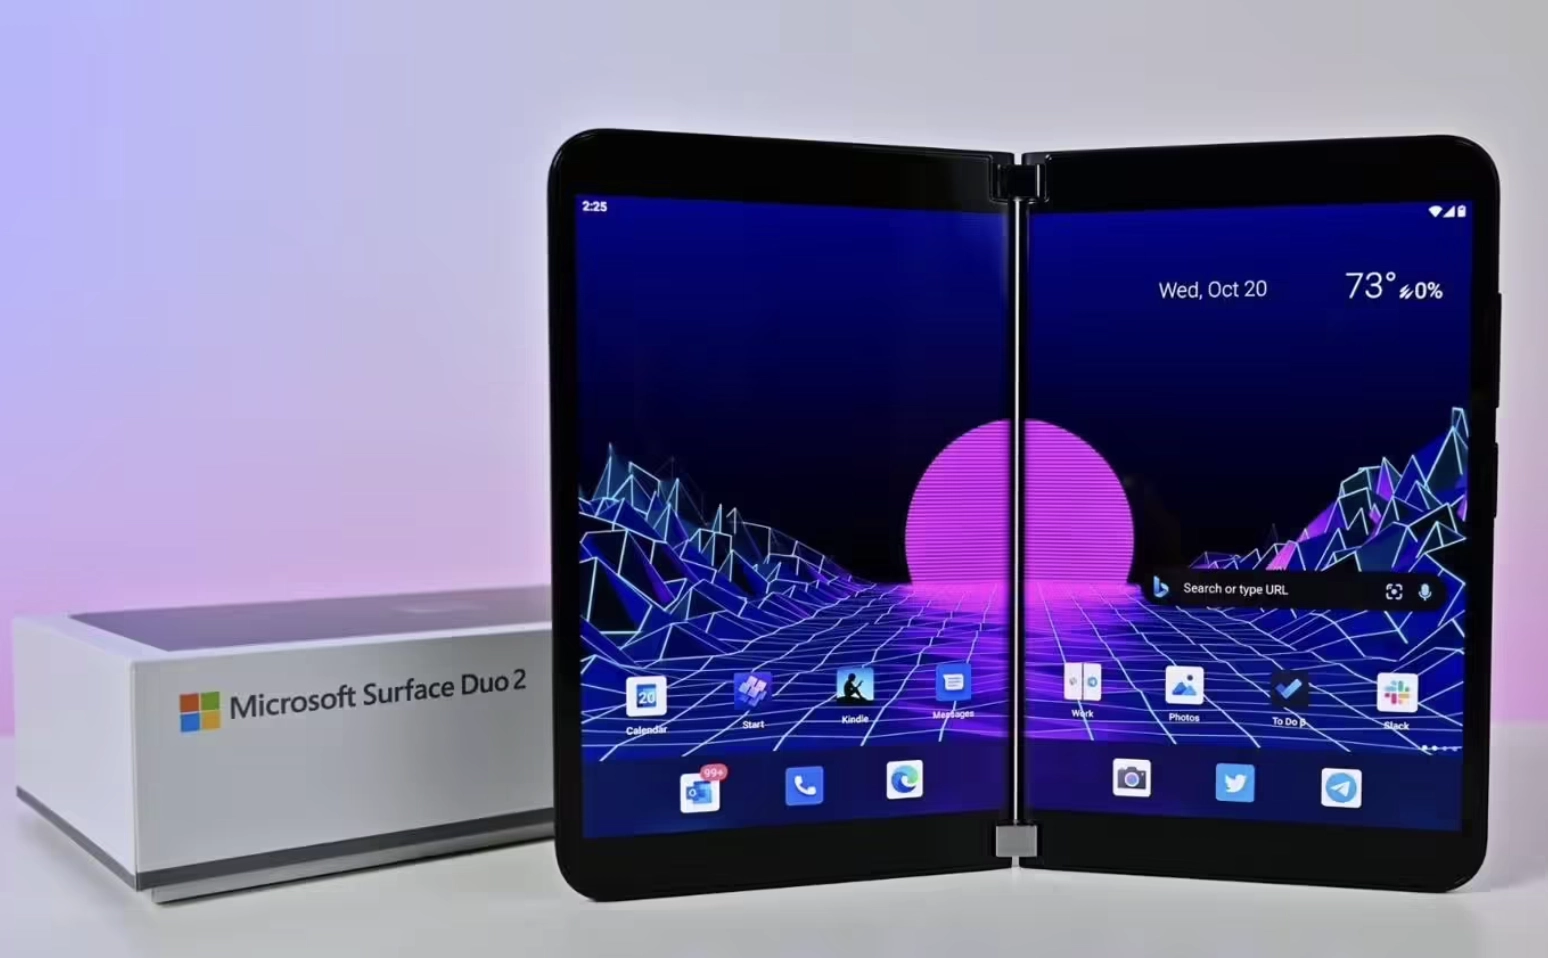 微软新 Surface 可折叠手机专利获批 将推全新柔性屏产品